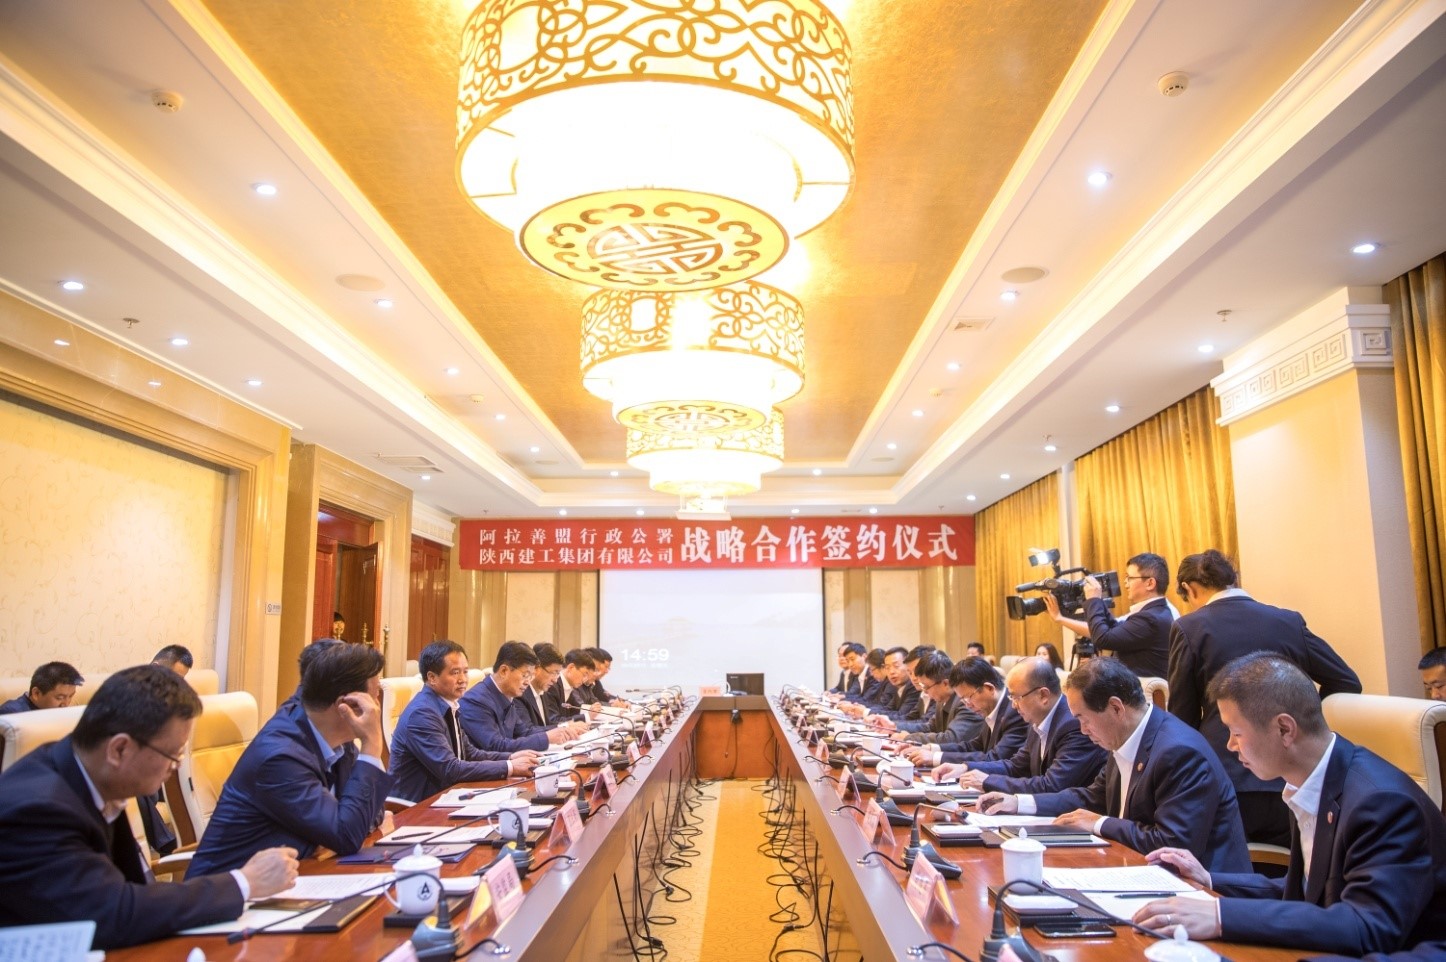 宝博体育
集团与内蒙古阿拉善盟行政公署举行战略合作签约仪式